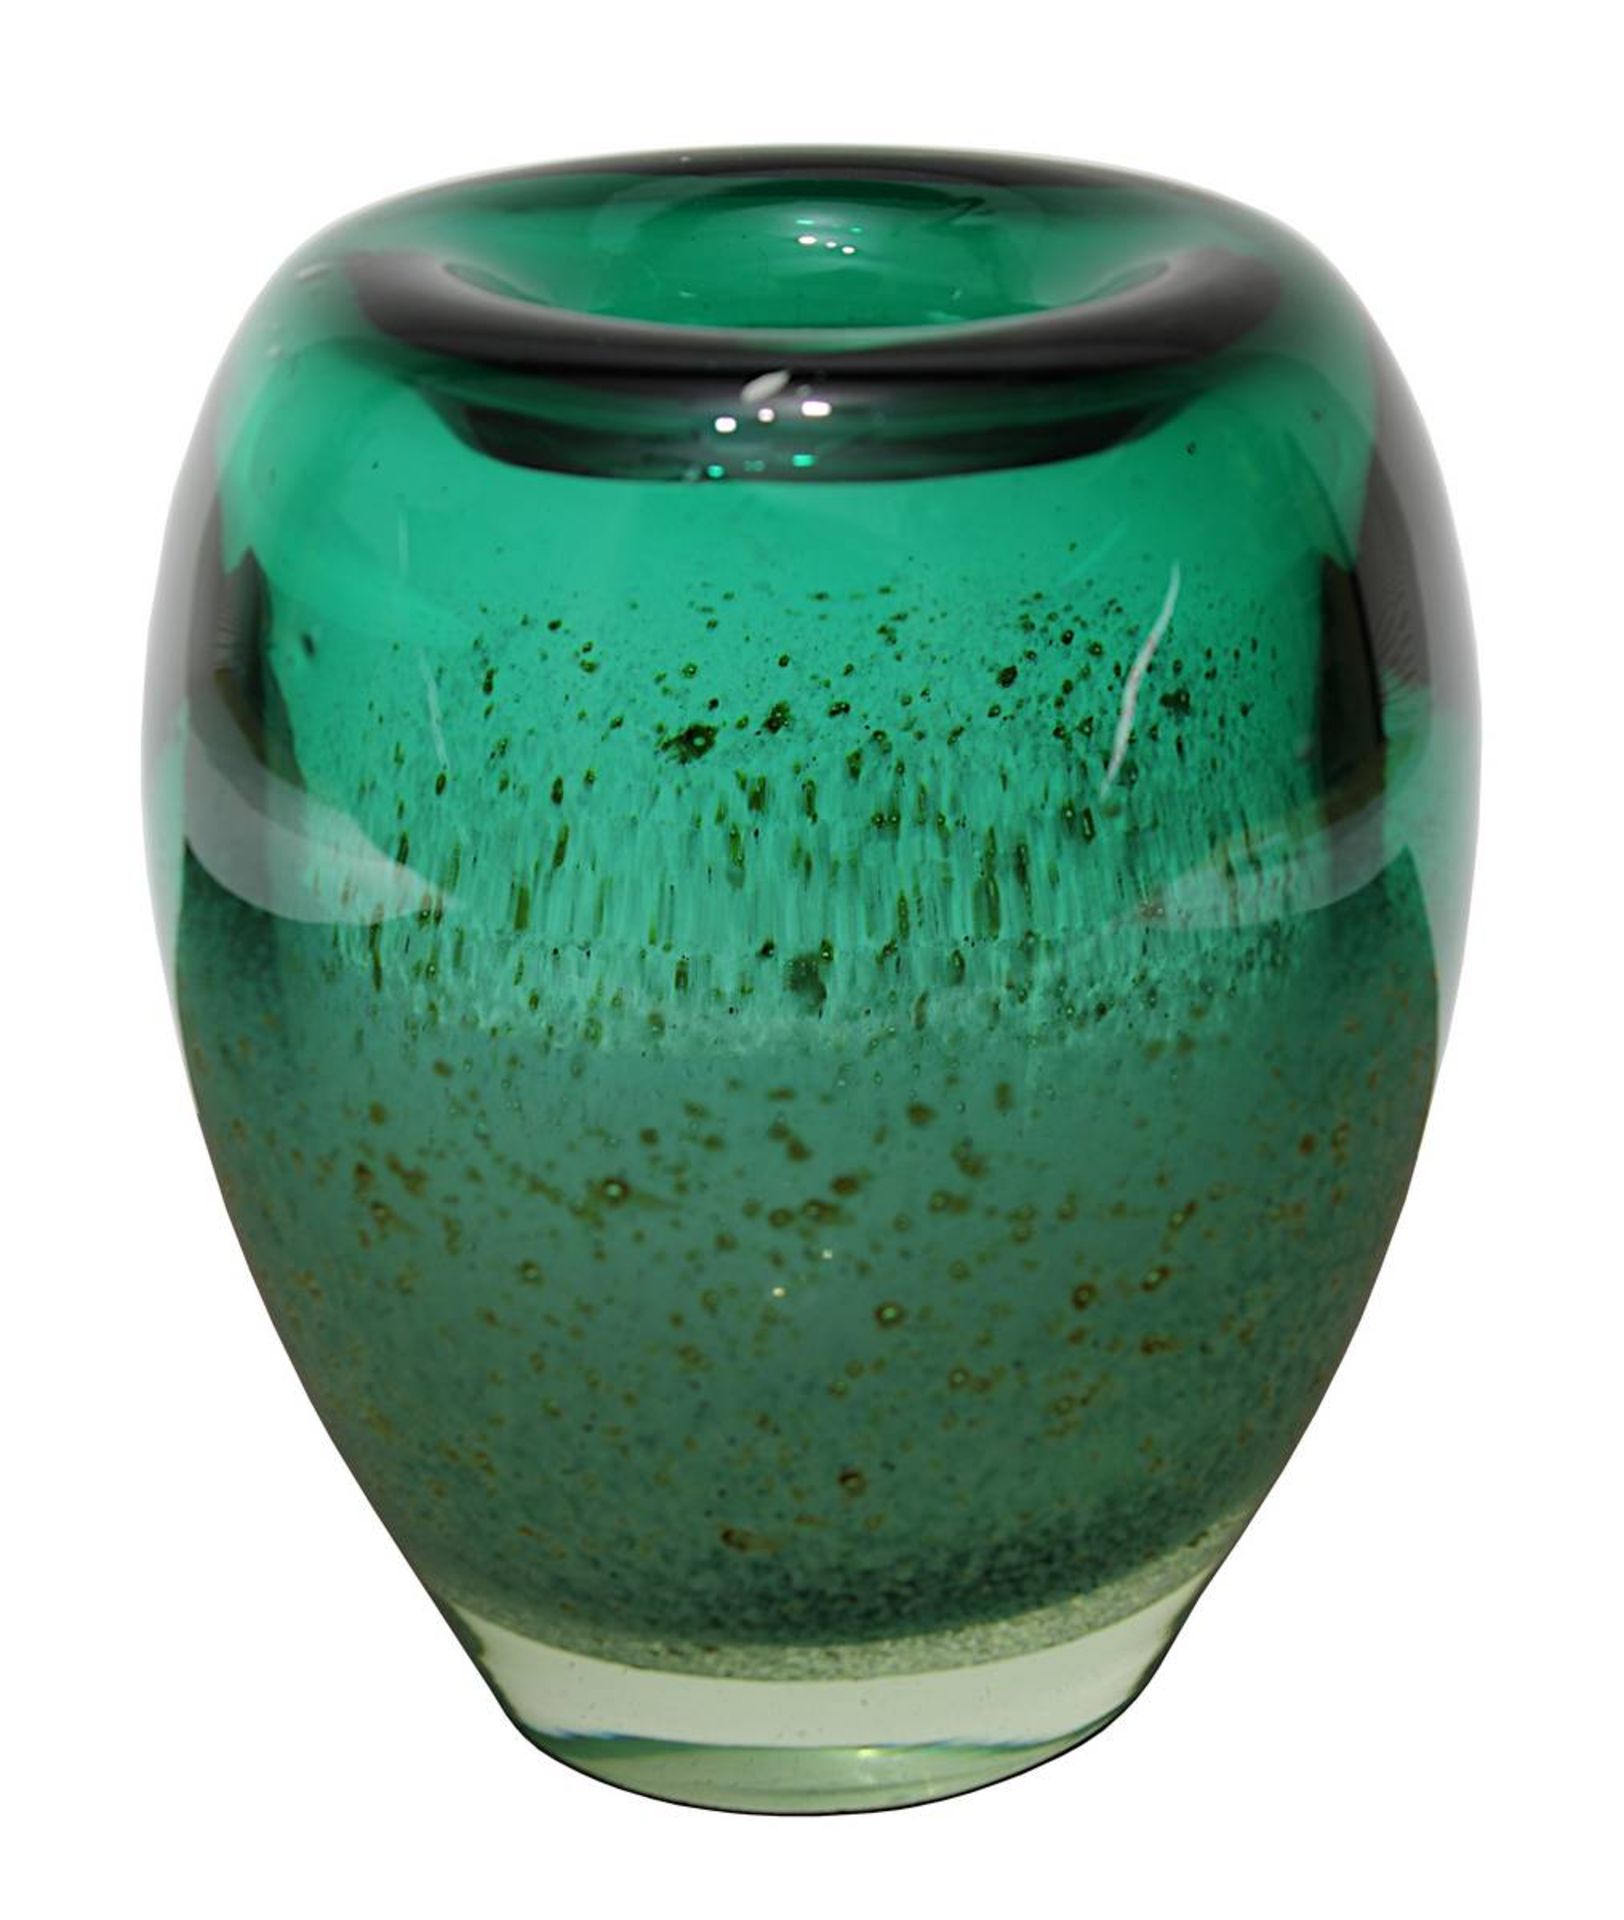 Große WMF Glasvase, sog. Dexel-Ei, Entwurf Walter Dexel um 1937, farbloses Glas mit grünen und